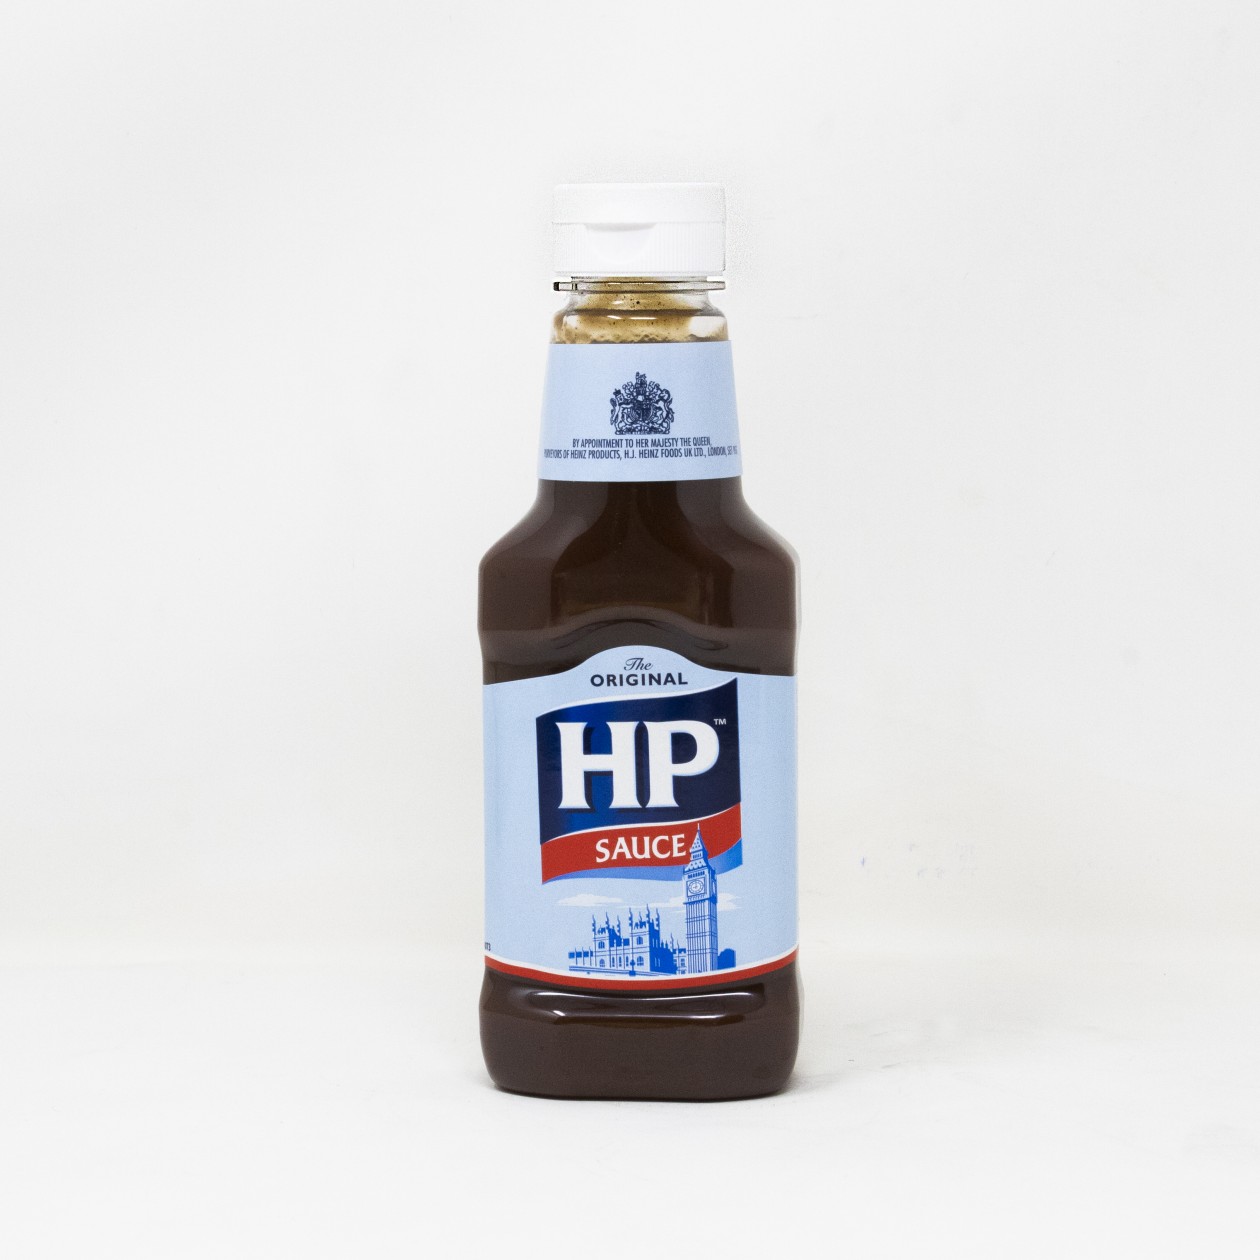 HP Original Sauce 285g